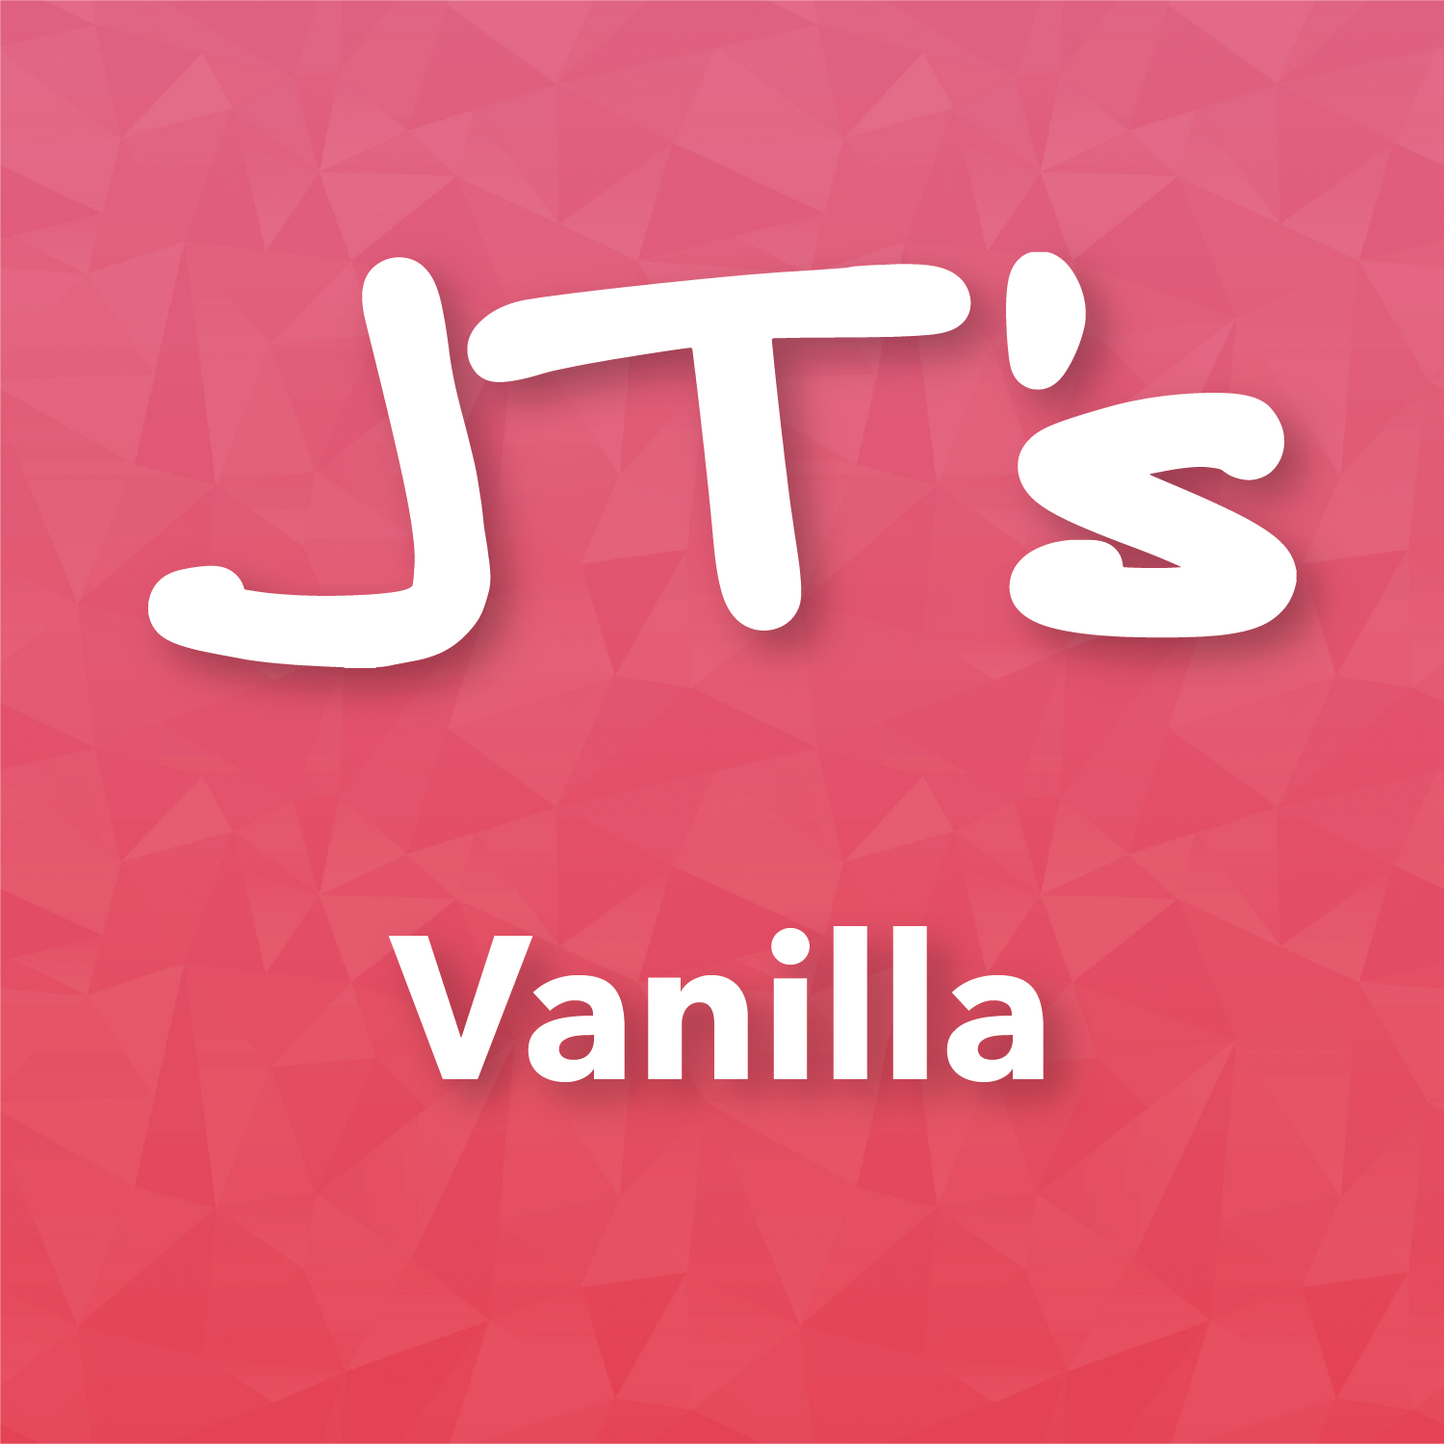 JT's - Vanilla 10ml